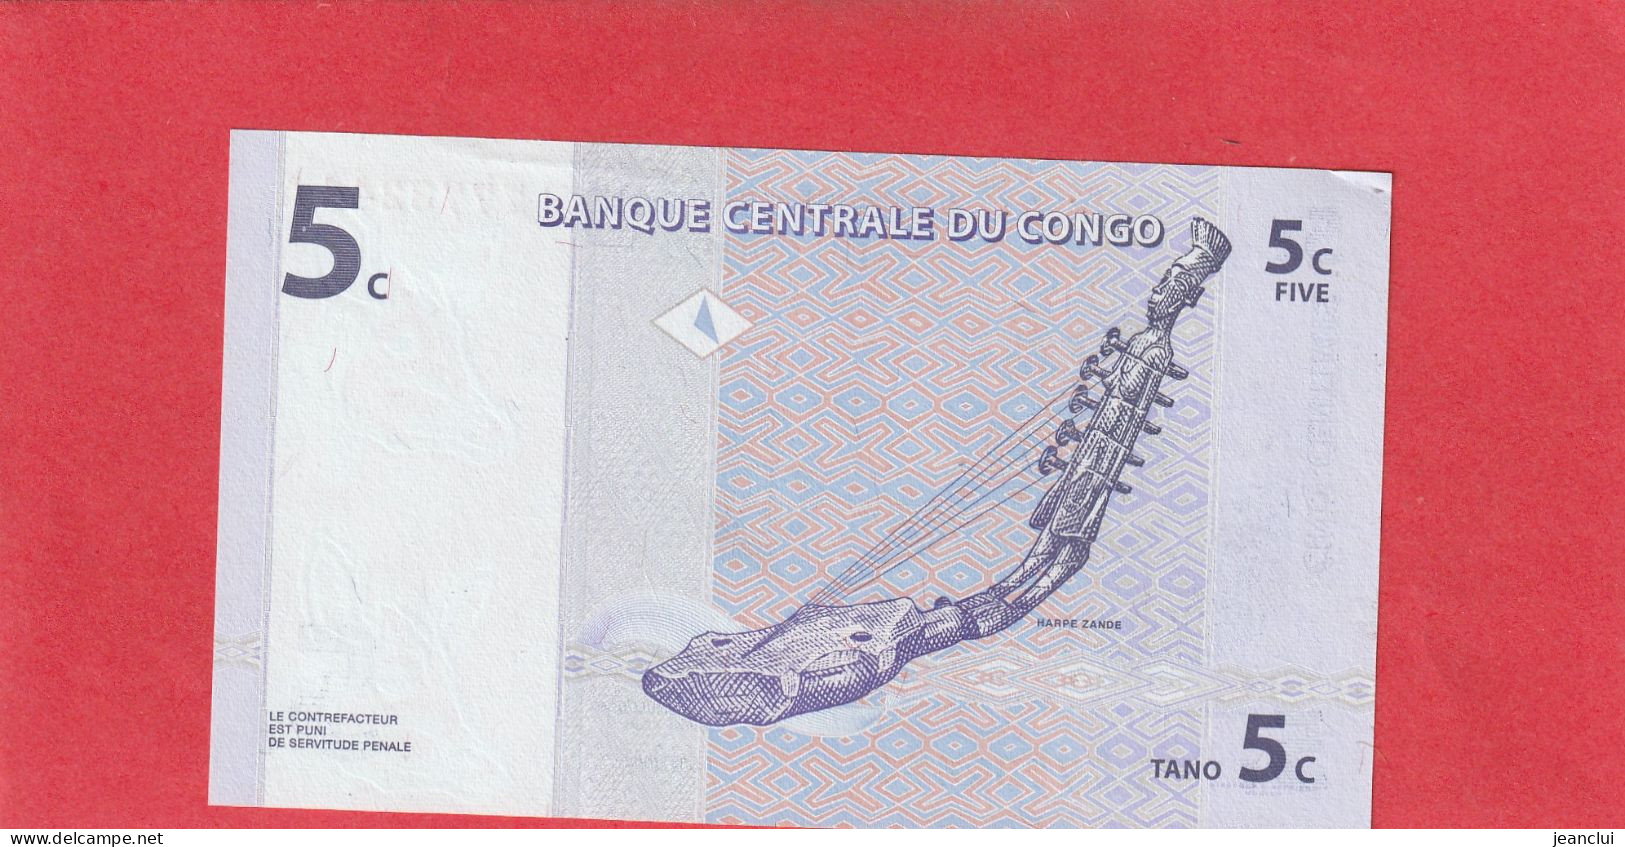 BANQUE CENTRALE DU CONGO  .  5 CENTIMES  .  01-11-1997  .  N°  B 7773244 A  .  BILLET EN TRES BEL ETAT  .  2 SCANNES - République Démocratique Du Congo & Zaïre